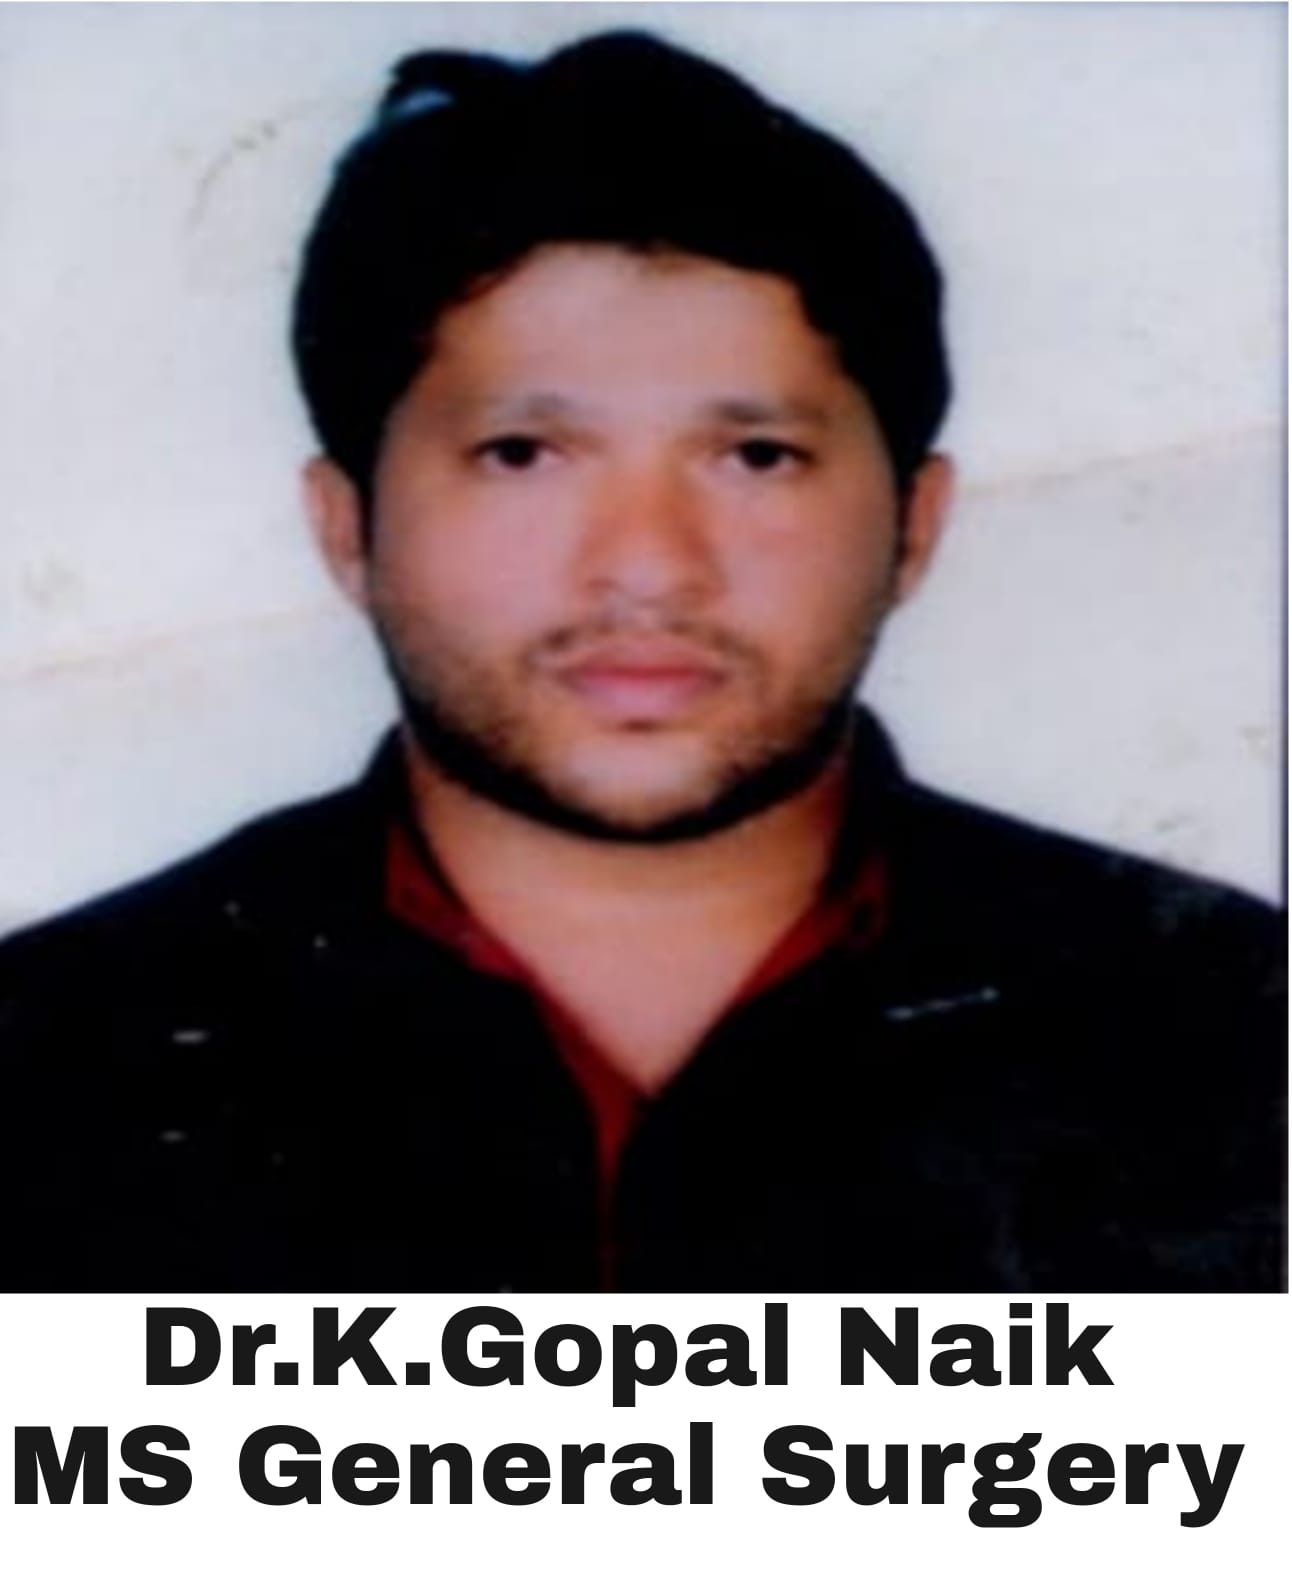 K Gopal Naik